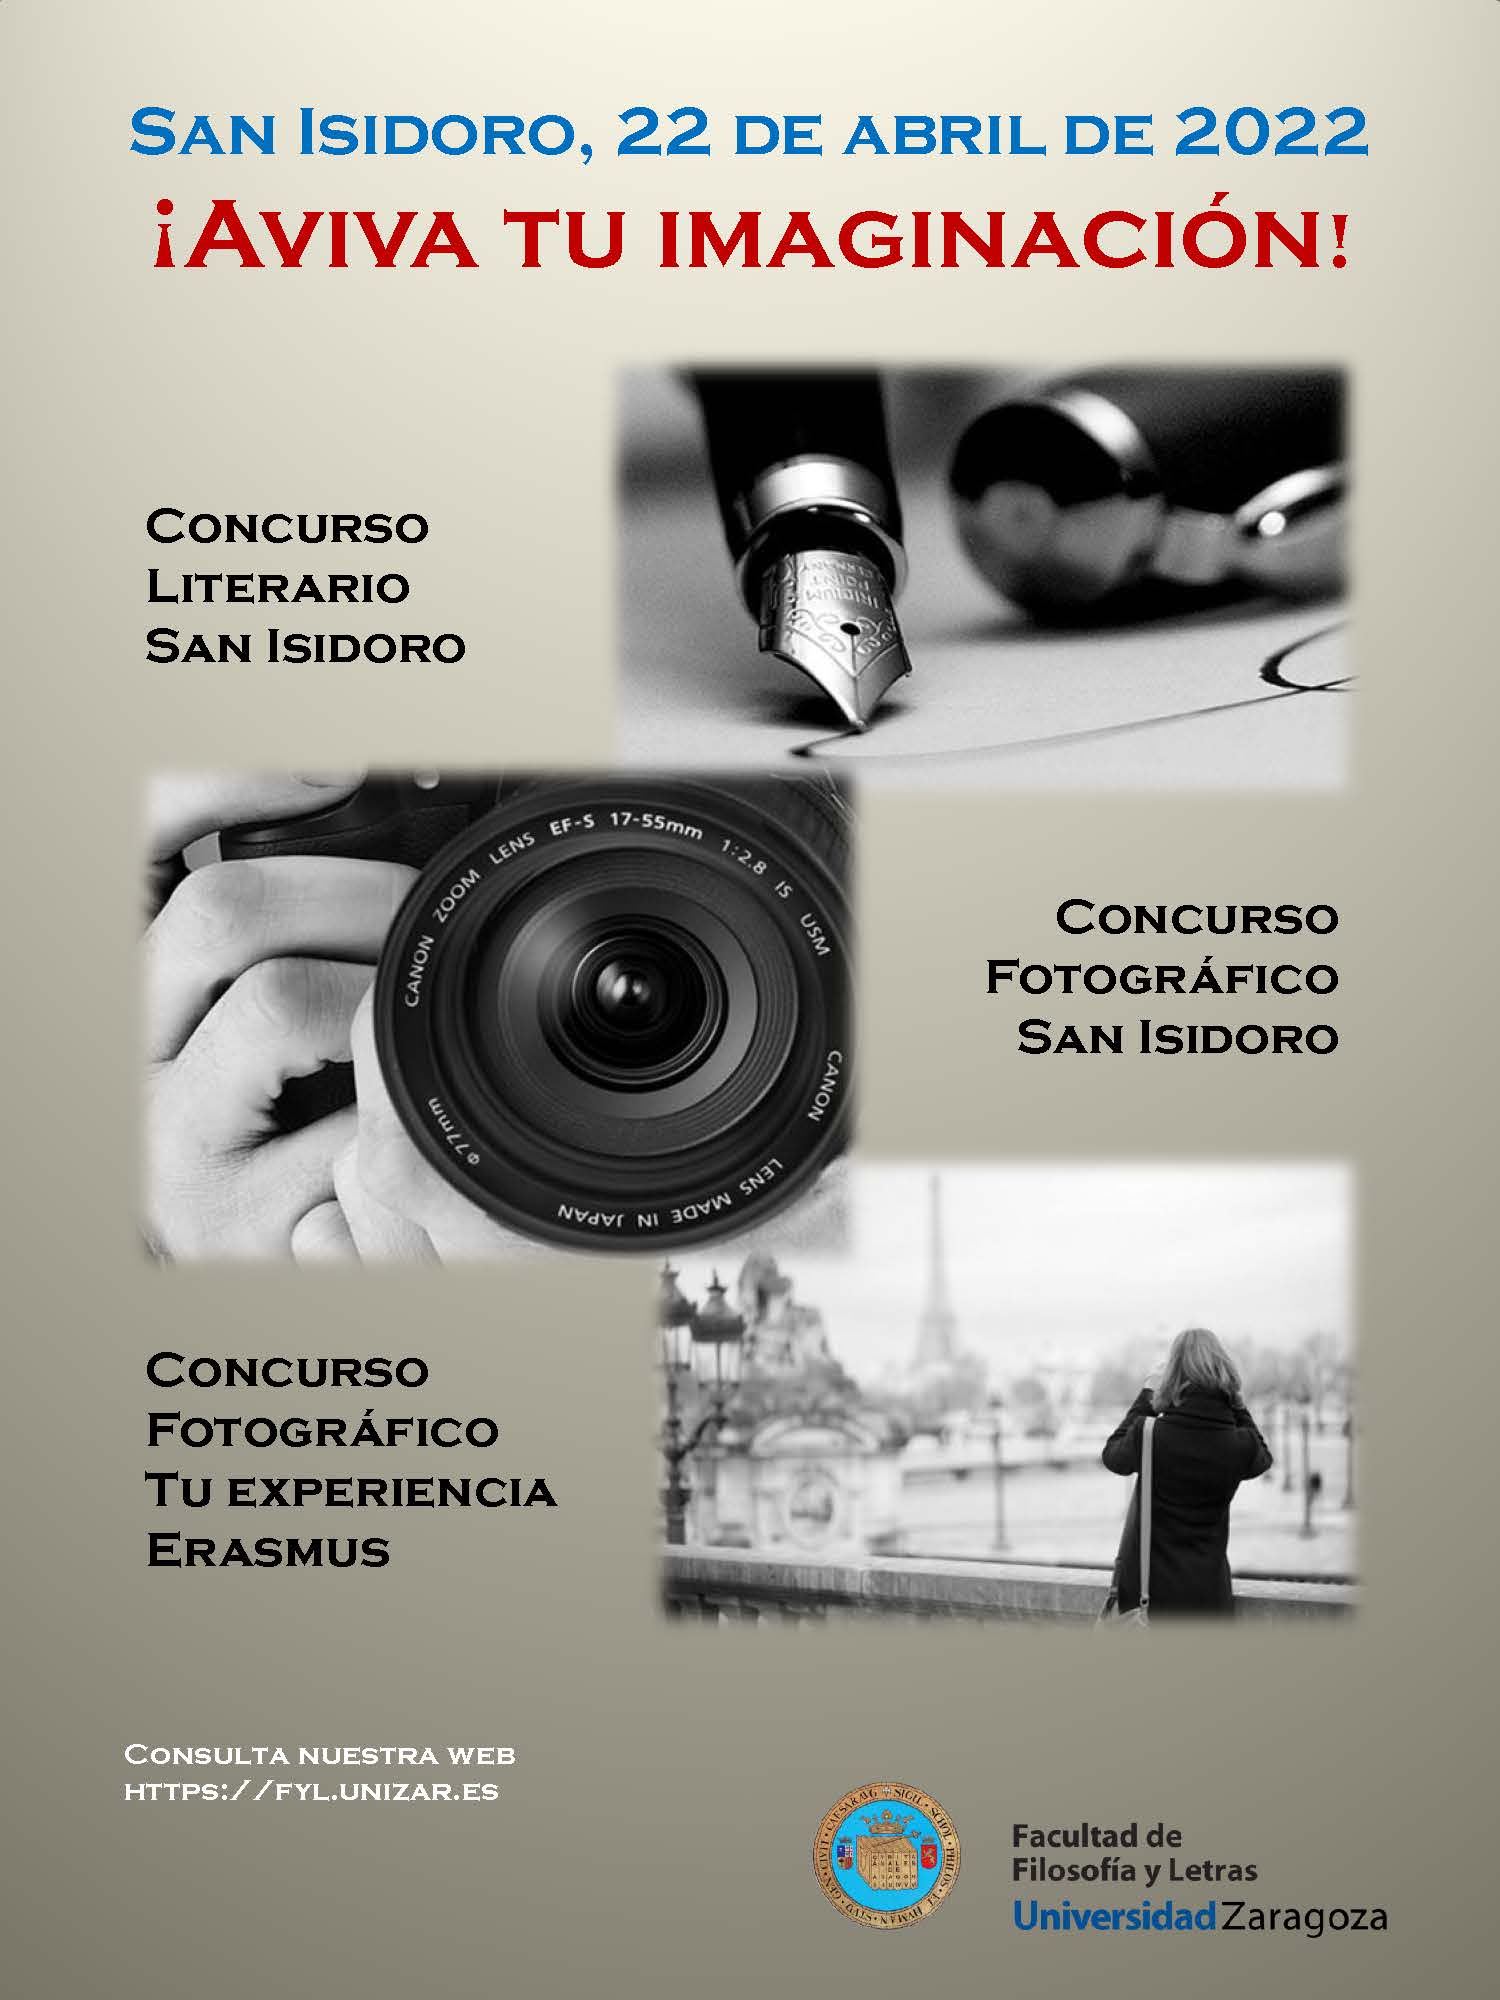 Concurso Literario y fotográfico San Isidro